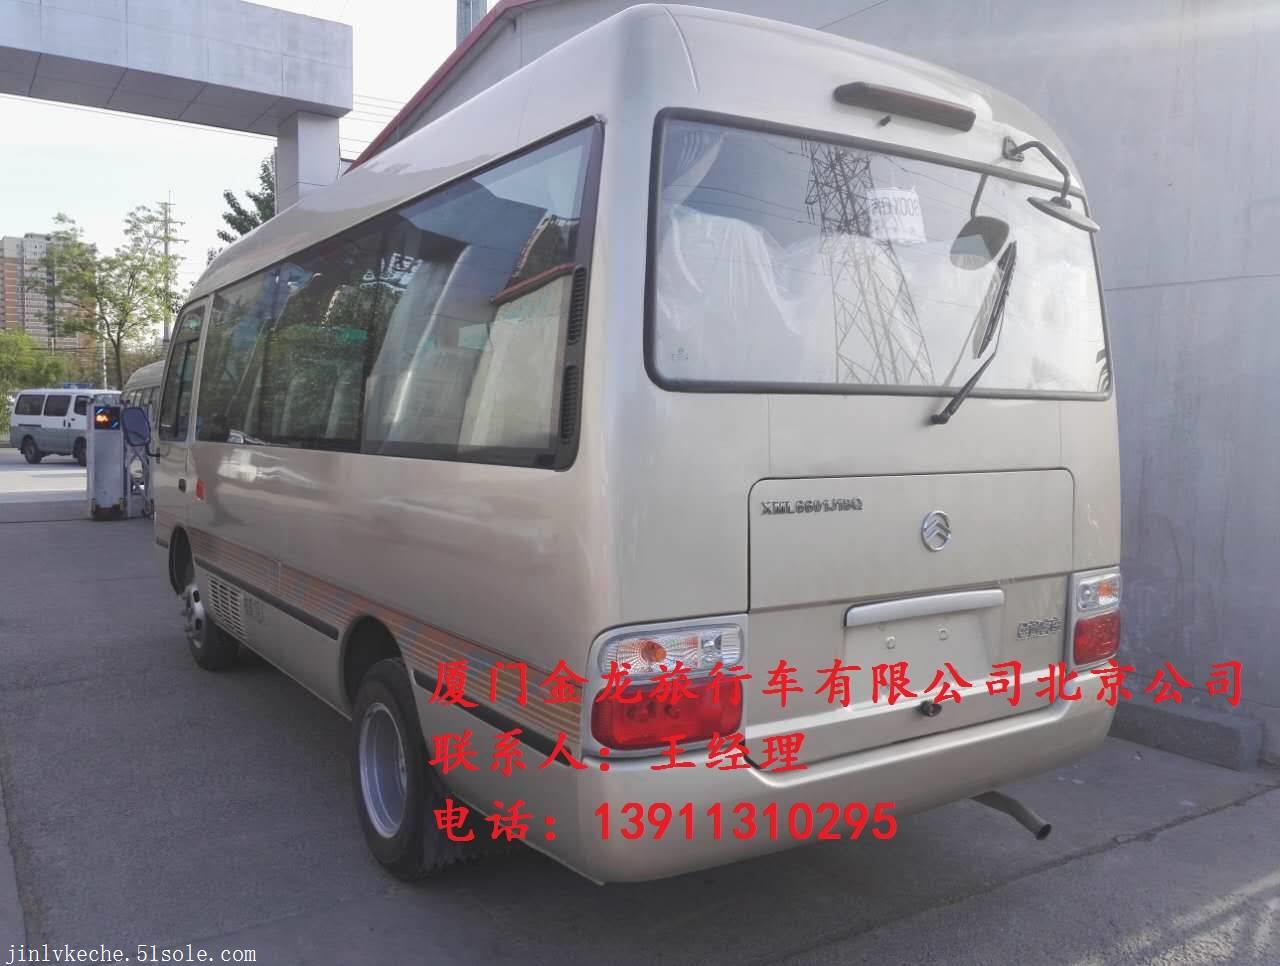 公司图片_厦门金龙旅行车有限公司北京销售分公司 搜了网